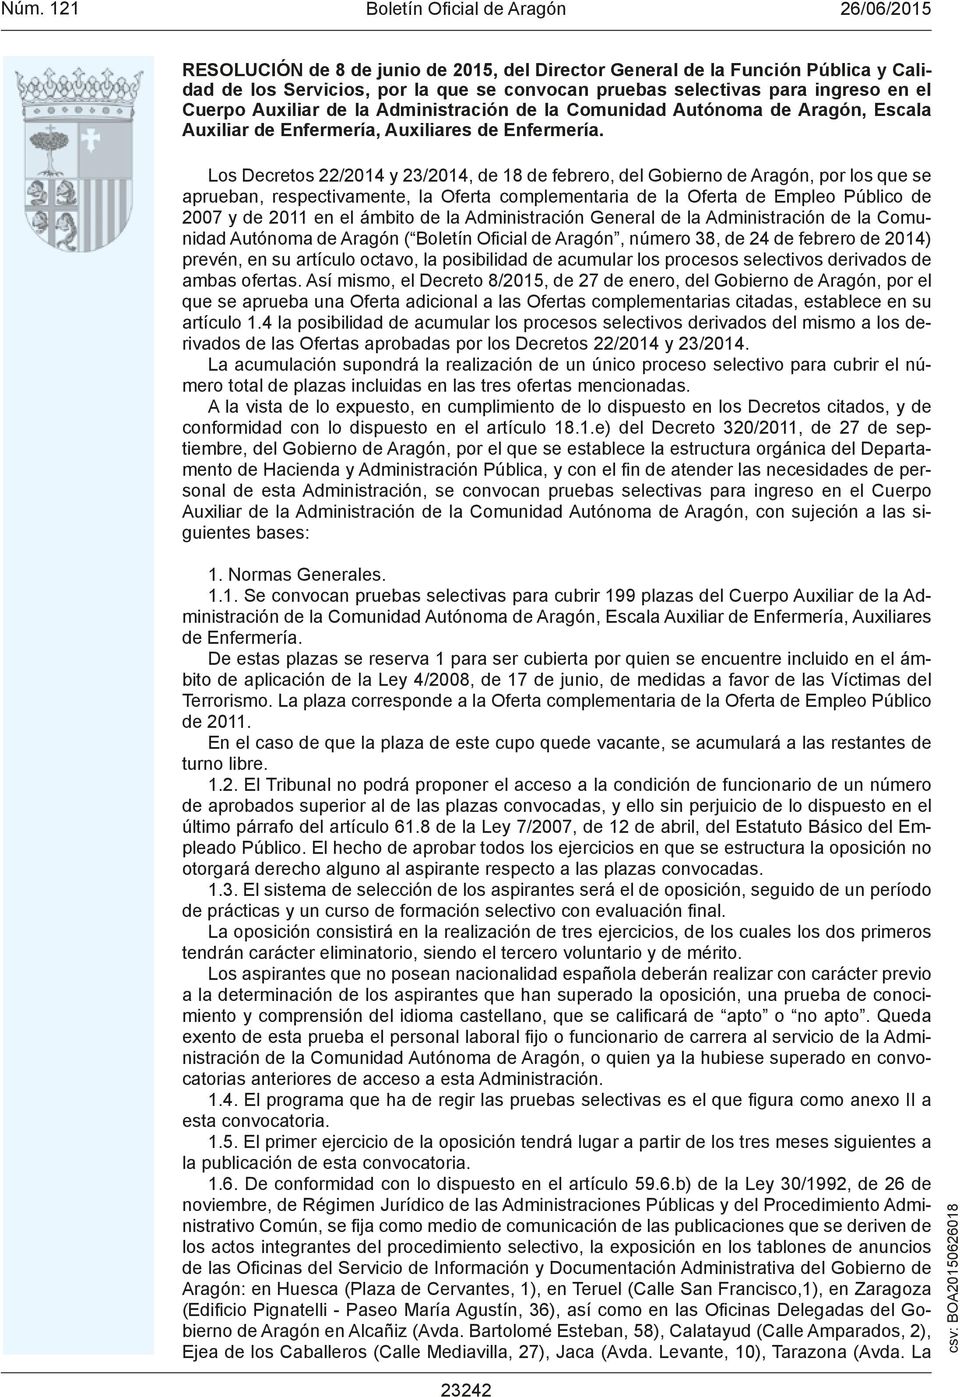 Los Decretos 22/2014 y 23/2014, de 18 de febrero, del Gobierno de Aragón, por los que se aprueban, respectivamente, la Oferta complementaria de la Oferta de Empleo Público de 2007 y de 2011 en el